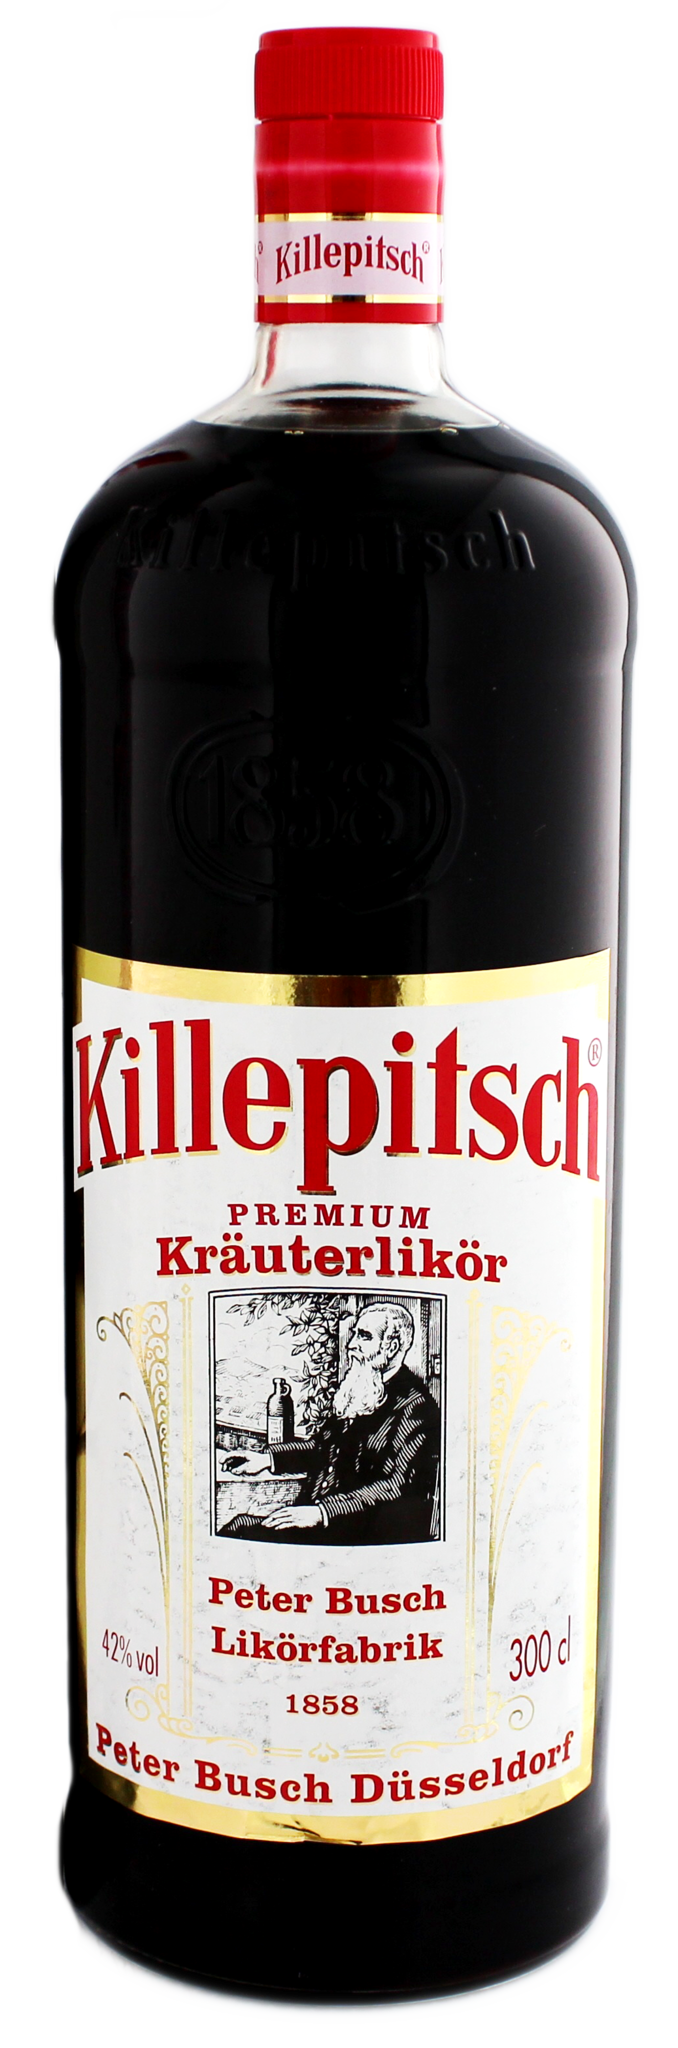 Killepitsch 3,00 ltr 42% - Whiskysite.nl World of Fine Spirits